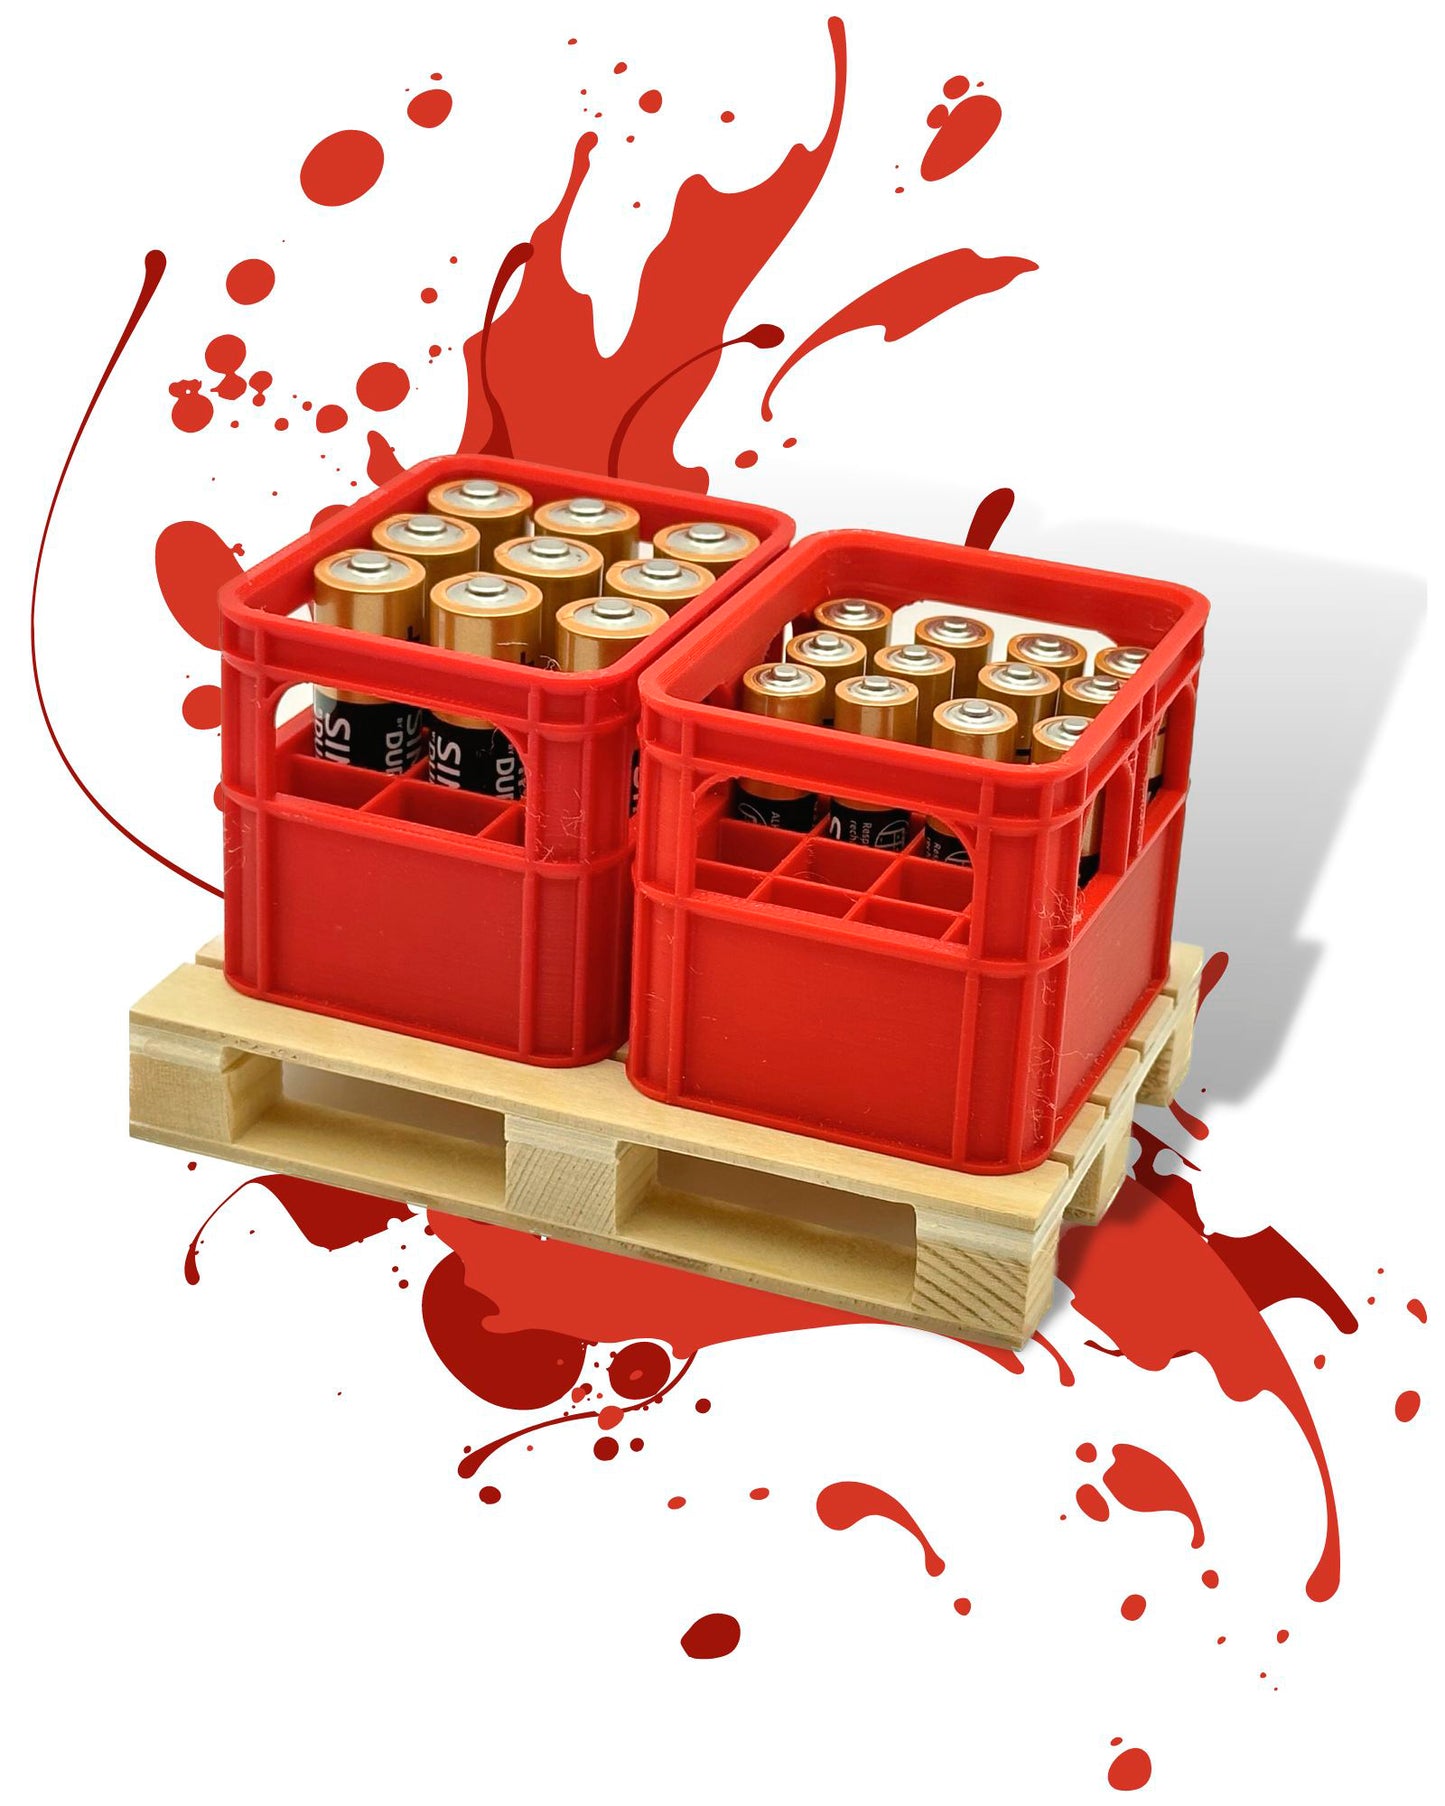 Batteriekiste Batteriebox Minikiste Minibox für Aufbewahrung von Batterien AA und AAA im Set mit Holzpalette